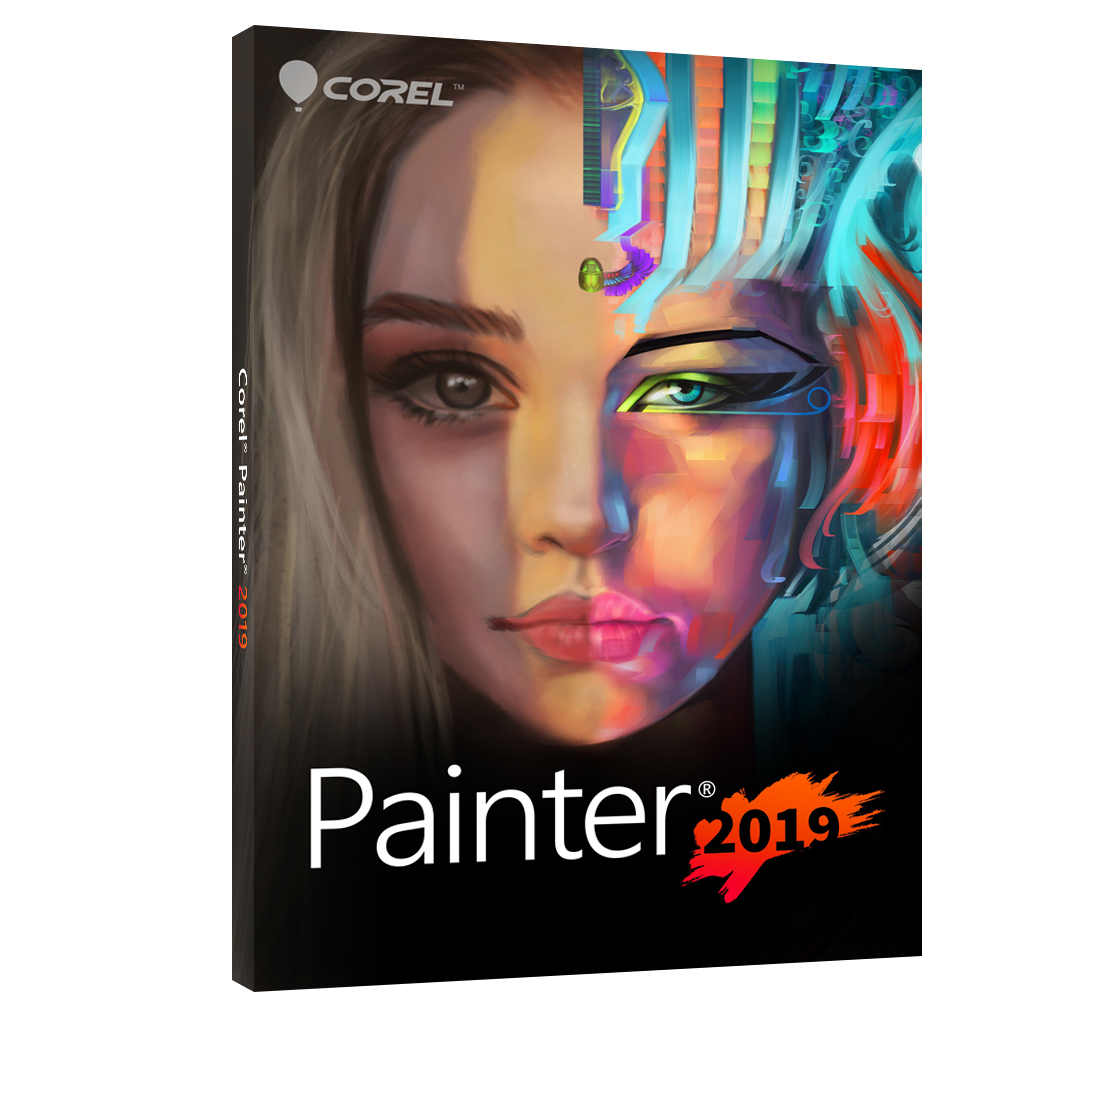 数字绘图软件 Corel Painter 2019 for Mac 汉化破解版-六饼哥精品资源分享站